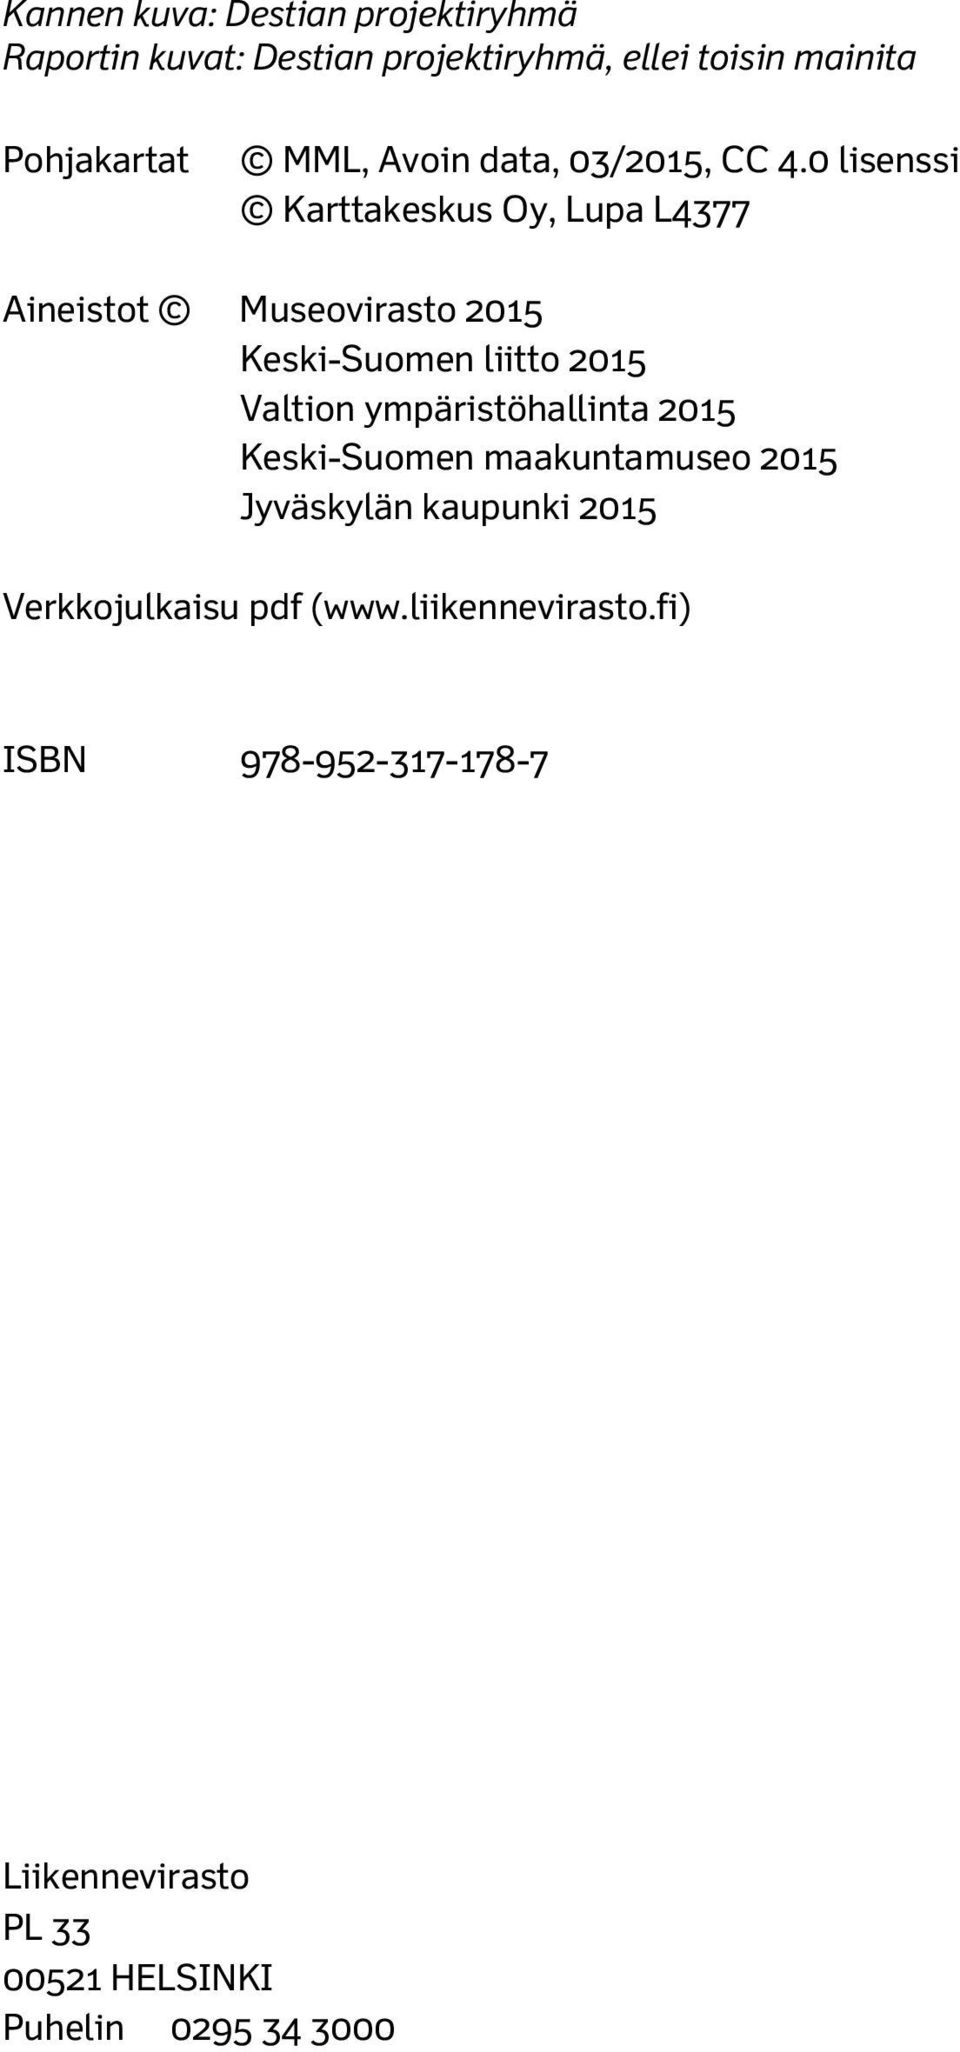 0 lisenssi Karttakeskus Oy, Lupa L4377 Aineistot Museovirasto 2015 Keski-Suomen liitto 2015 Valtion